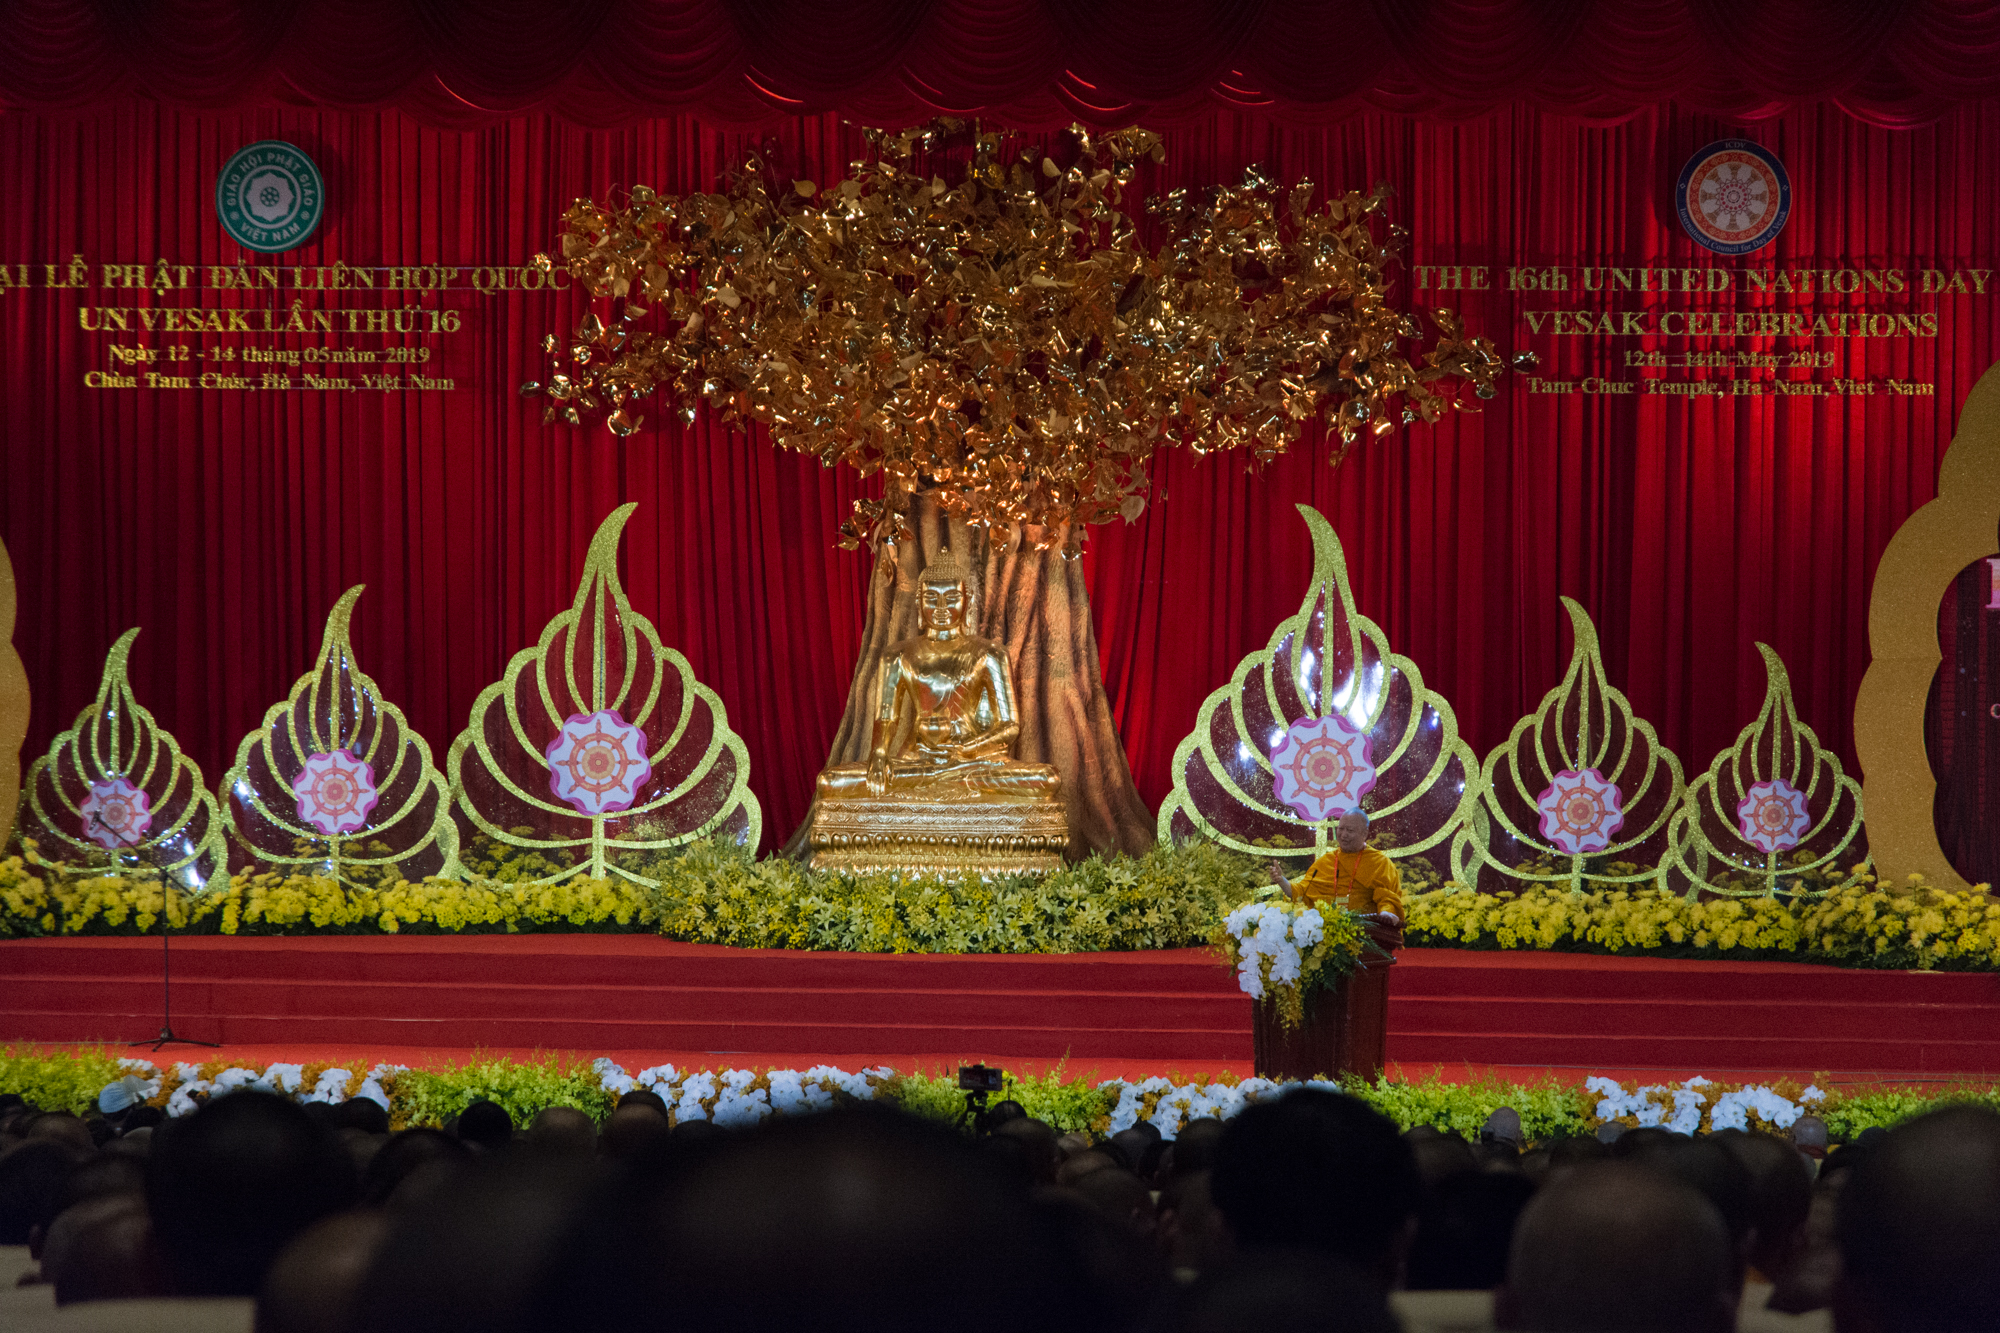 Az Egyház és a Főiskola delegációja a magyarországi vietnami buddhista közösség képviselőivel részt vett a Ha Nam tartományban megrendezett ENSZ Vészák ünnepségen.